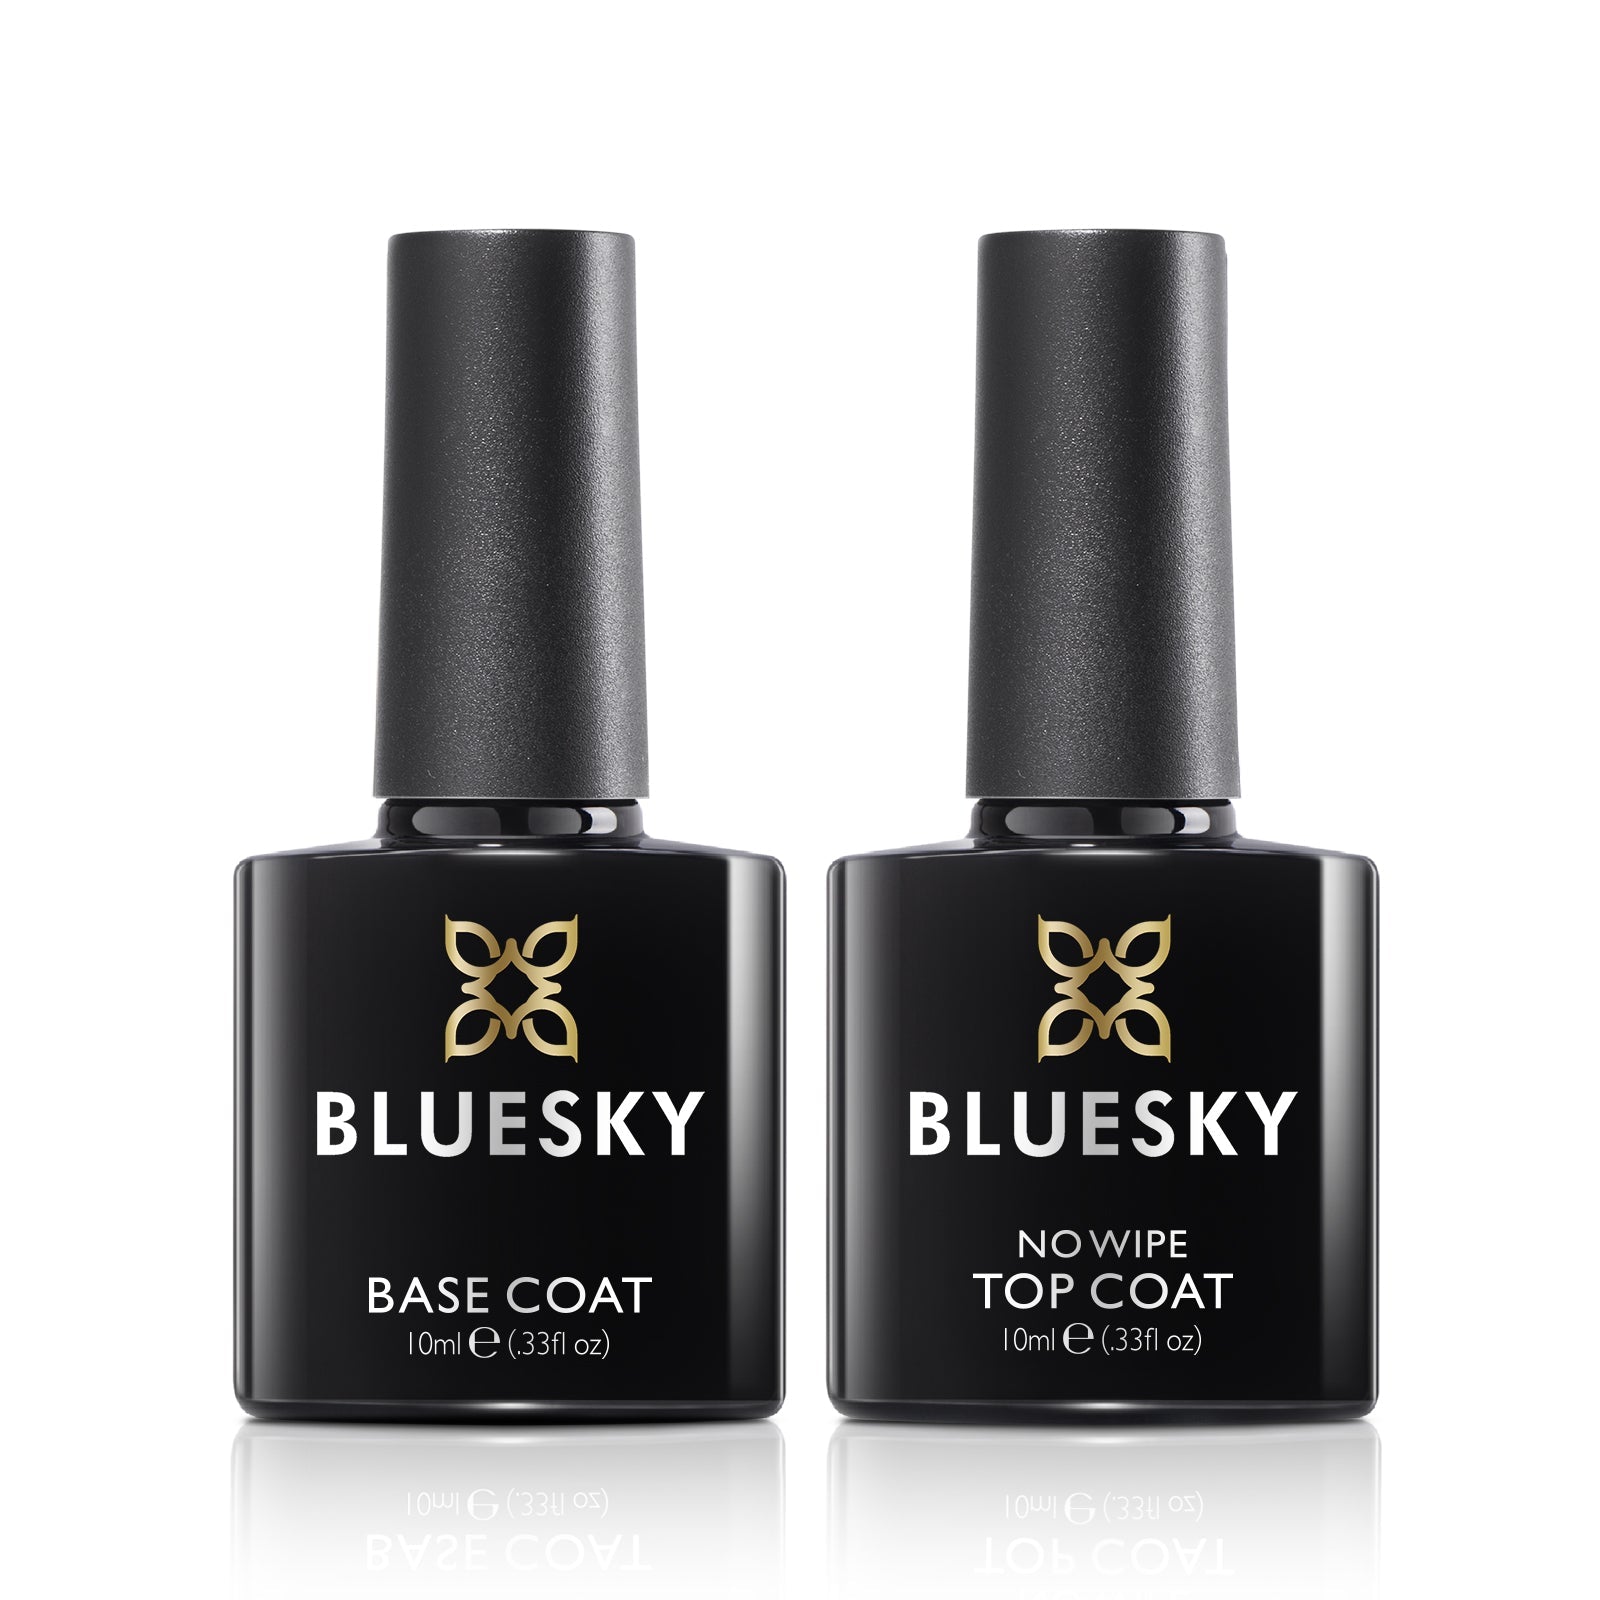 Base Coat and No Wipe Top Coat 2 pcs - BLUESKY